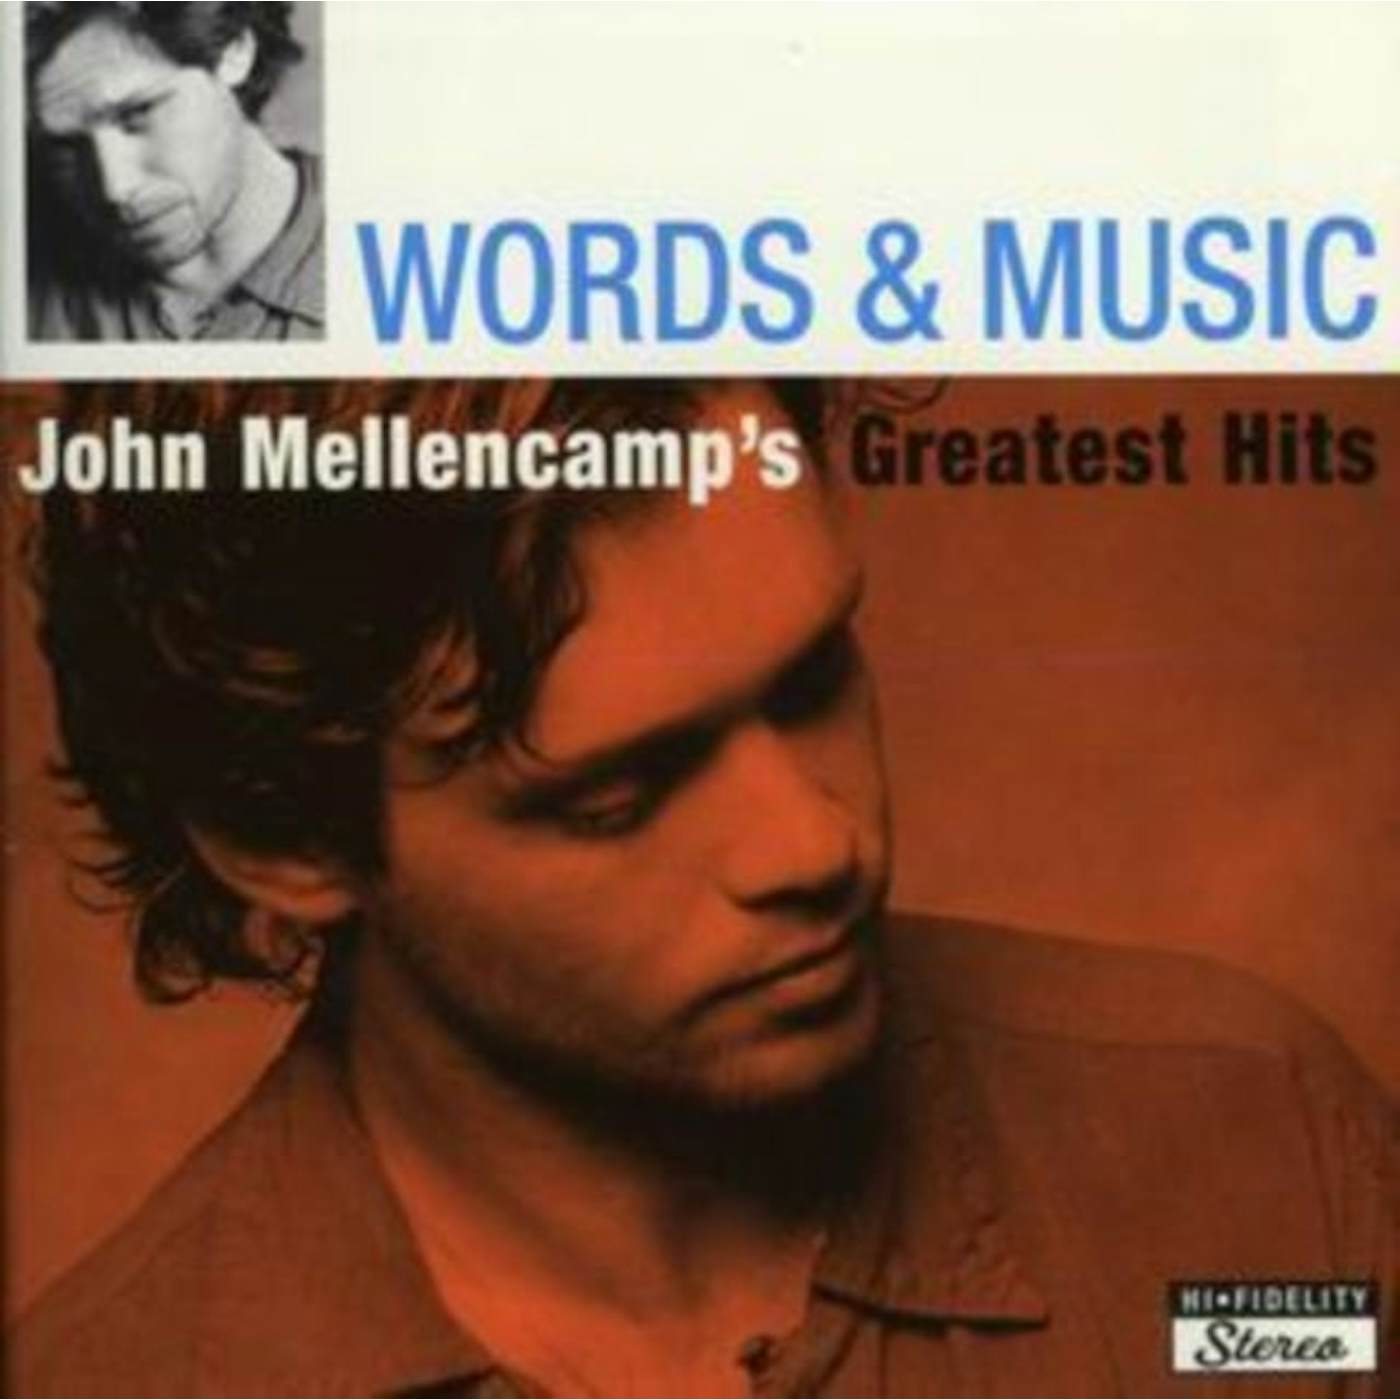 John Mellencamp CD - Words & Music - Greatest Hits